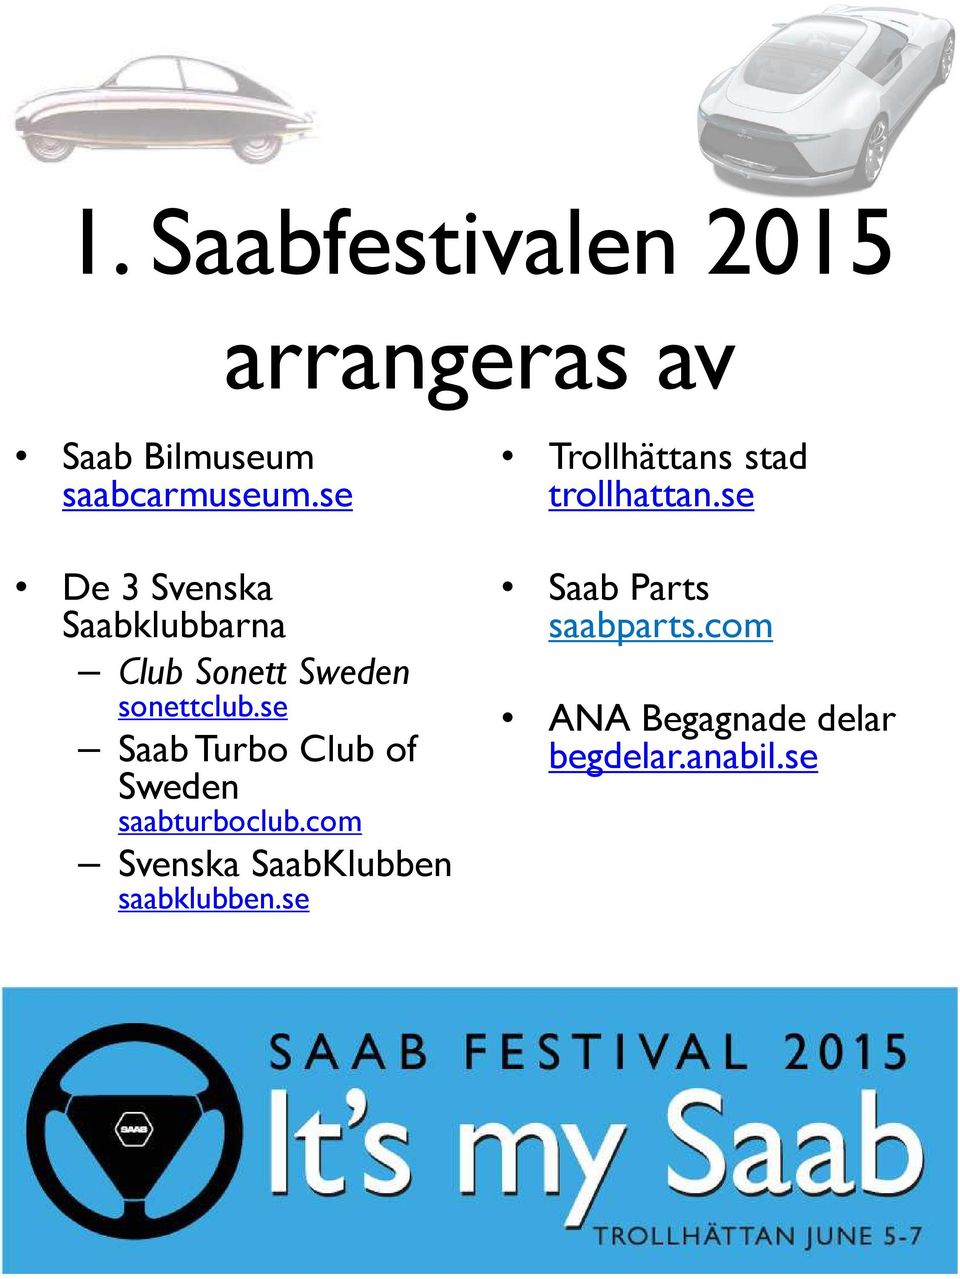 se Saab Turbo Club of Sweden saabturboclub.